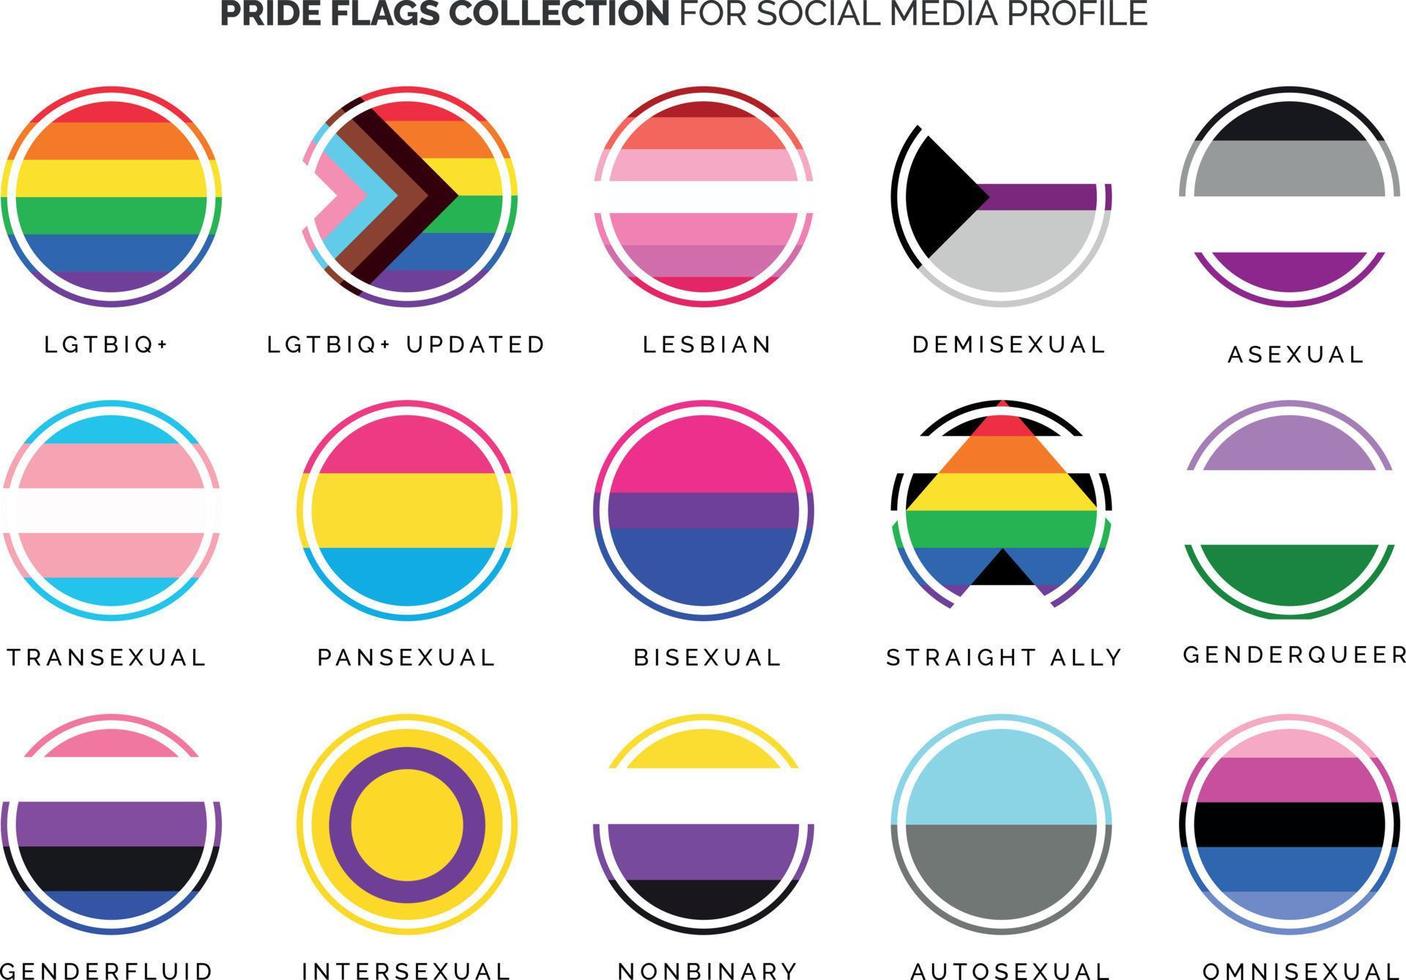 collection de drapeaux de fierté pour le profil de médias sociaux vecteur